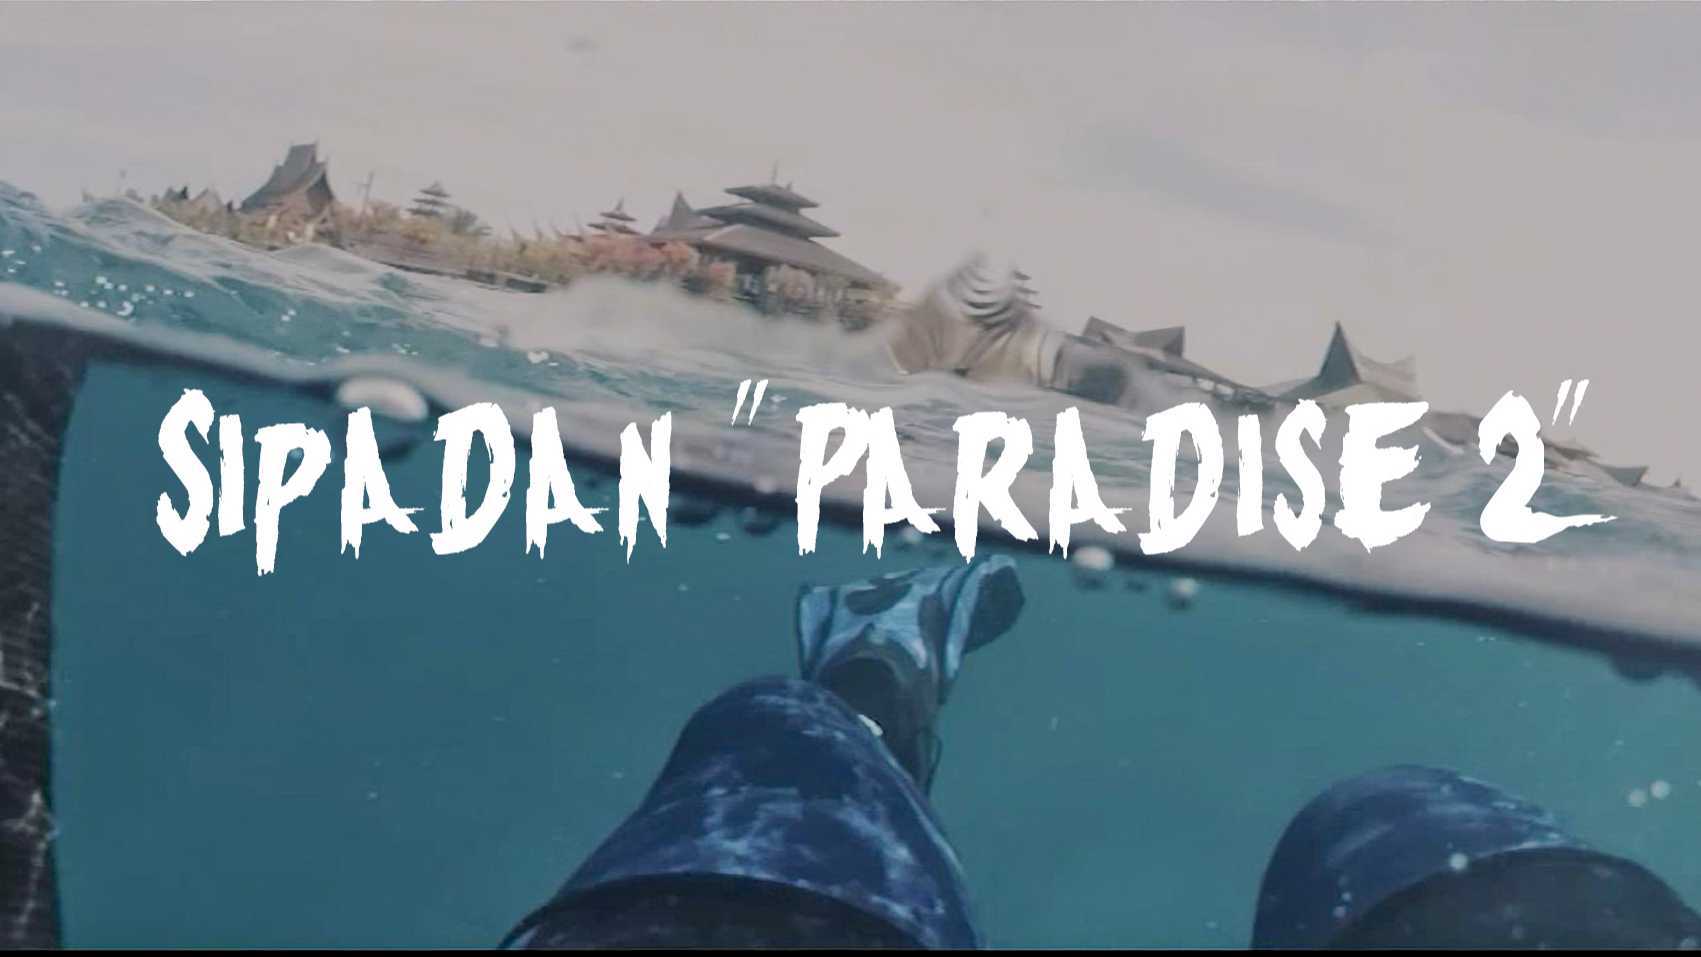 Sipadan "Paradise 2"